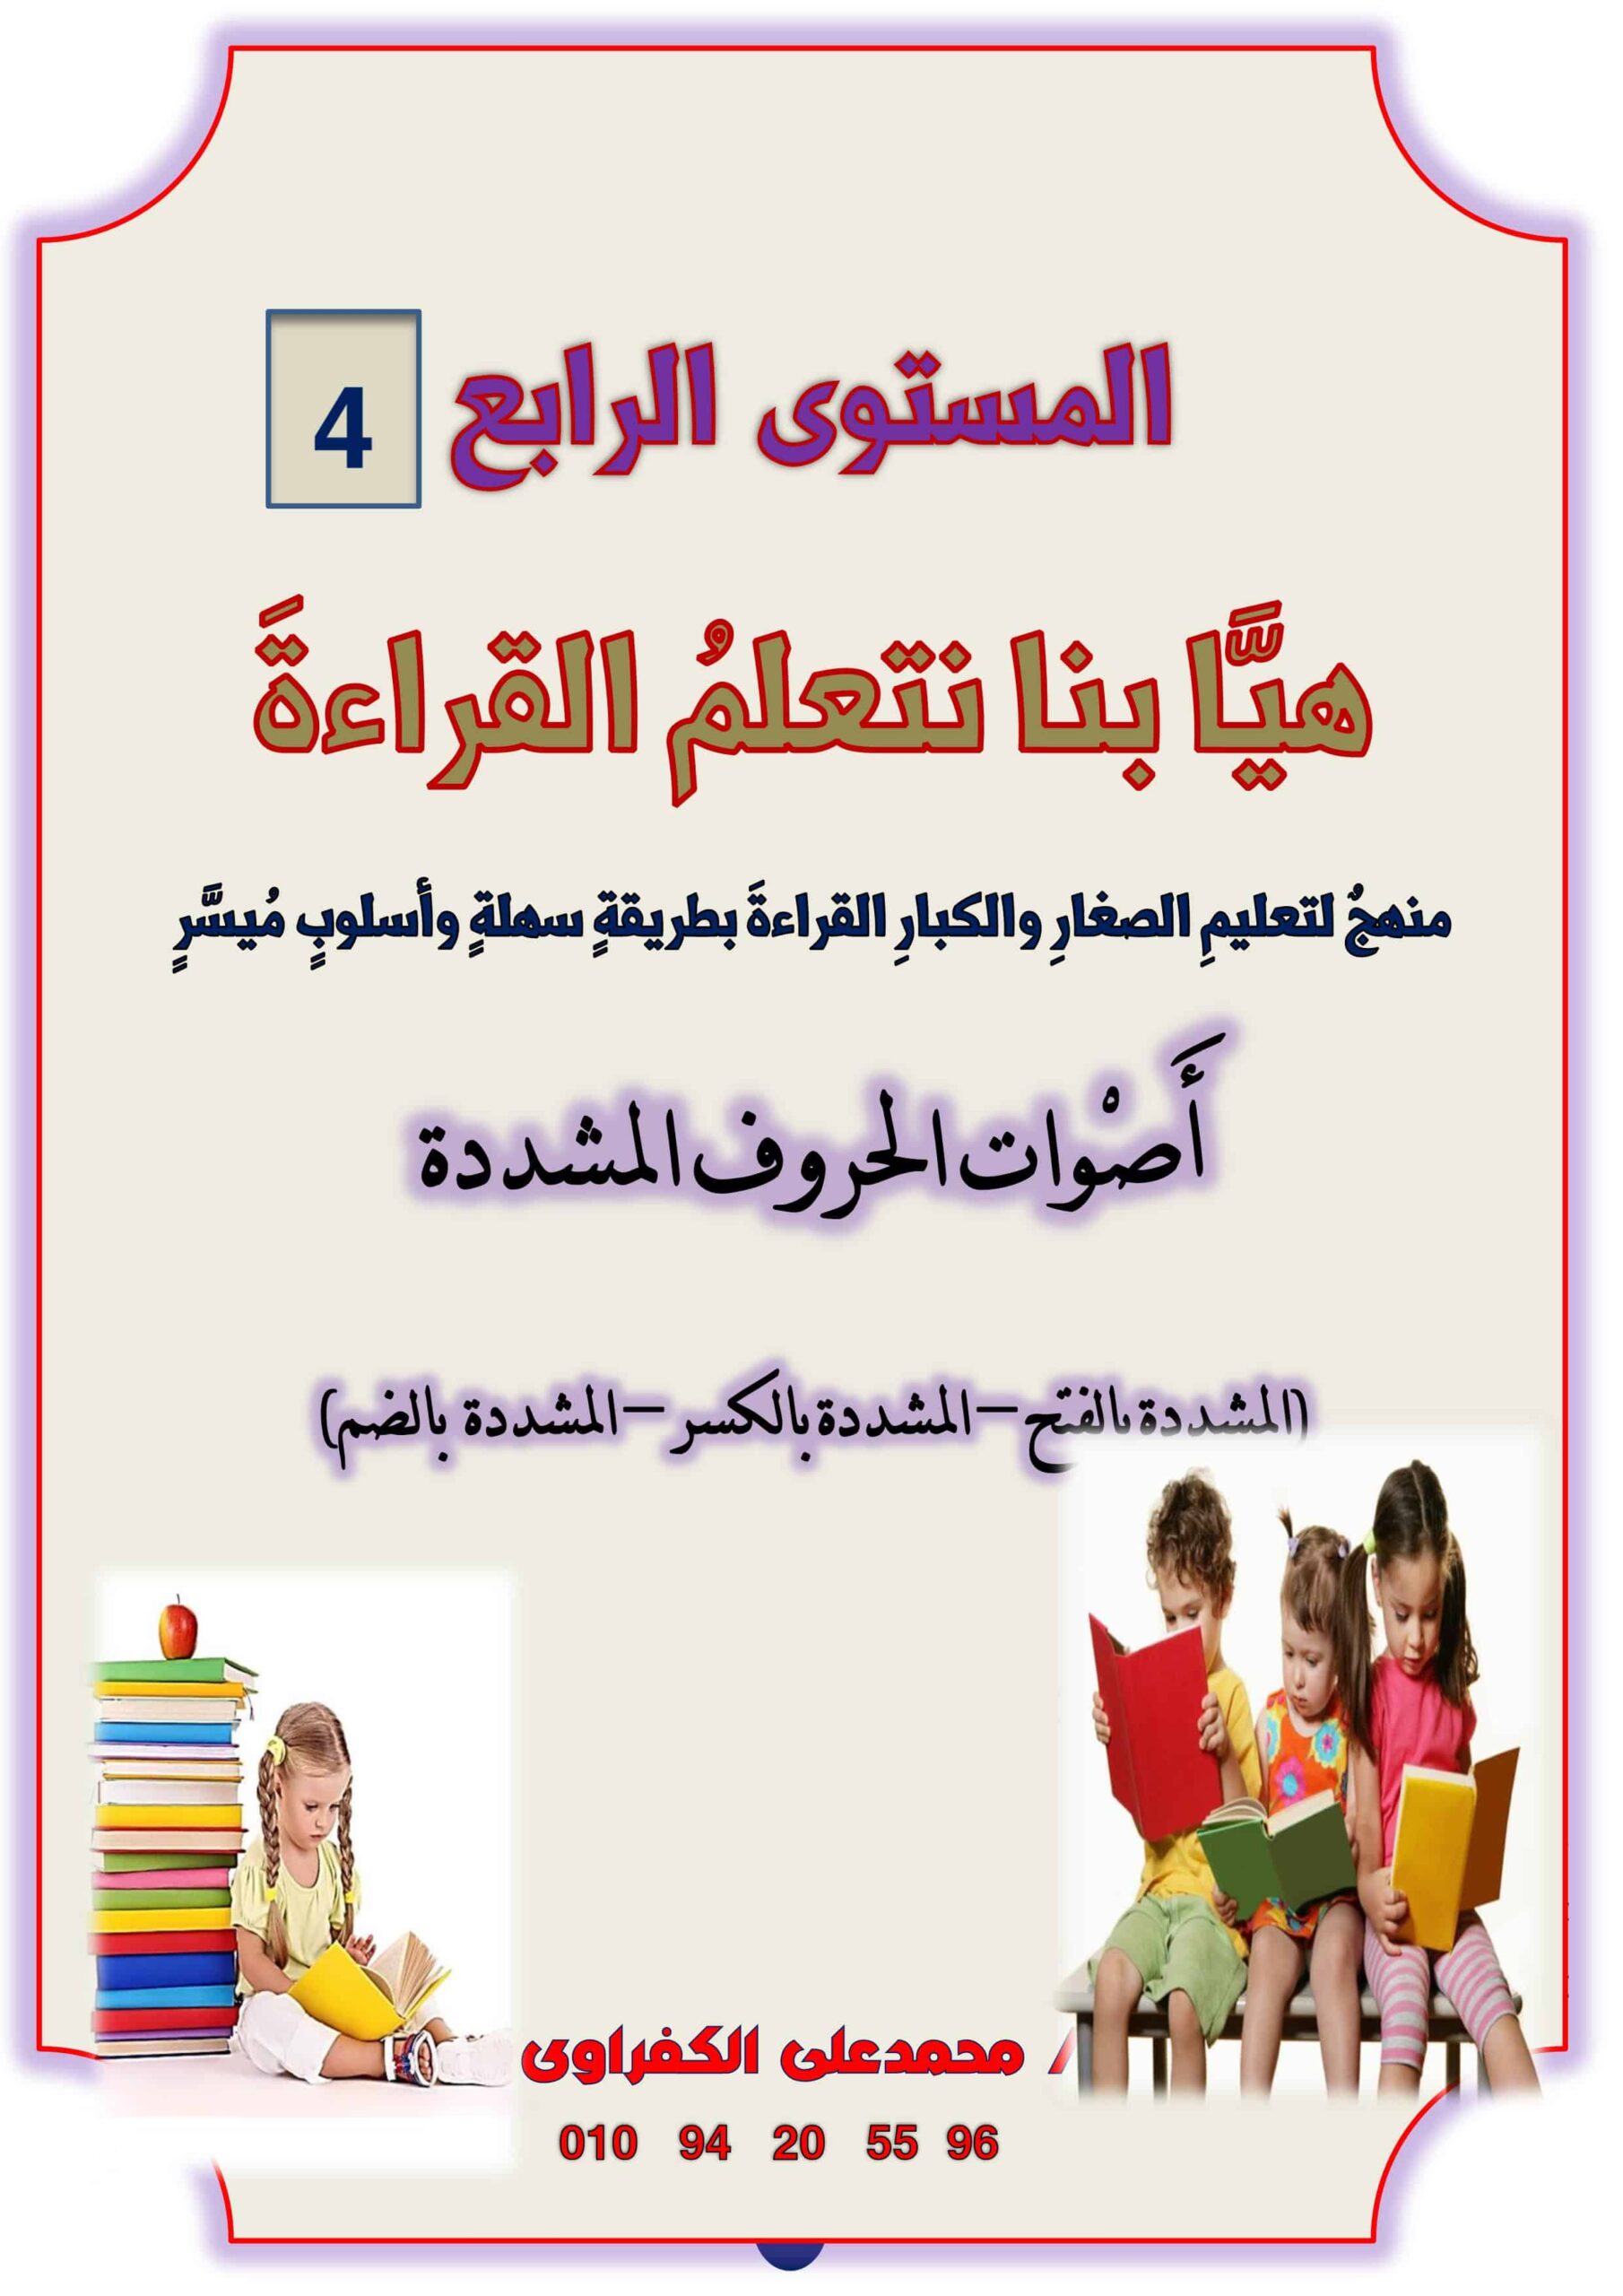 مذكرة هيا بنا نتعلم القراءة المستوى الرابع اللغة العربية الصف الأول